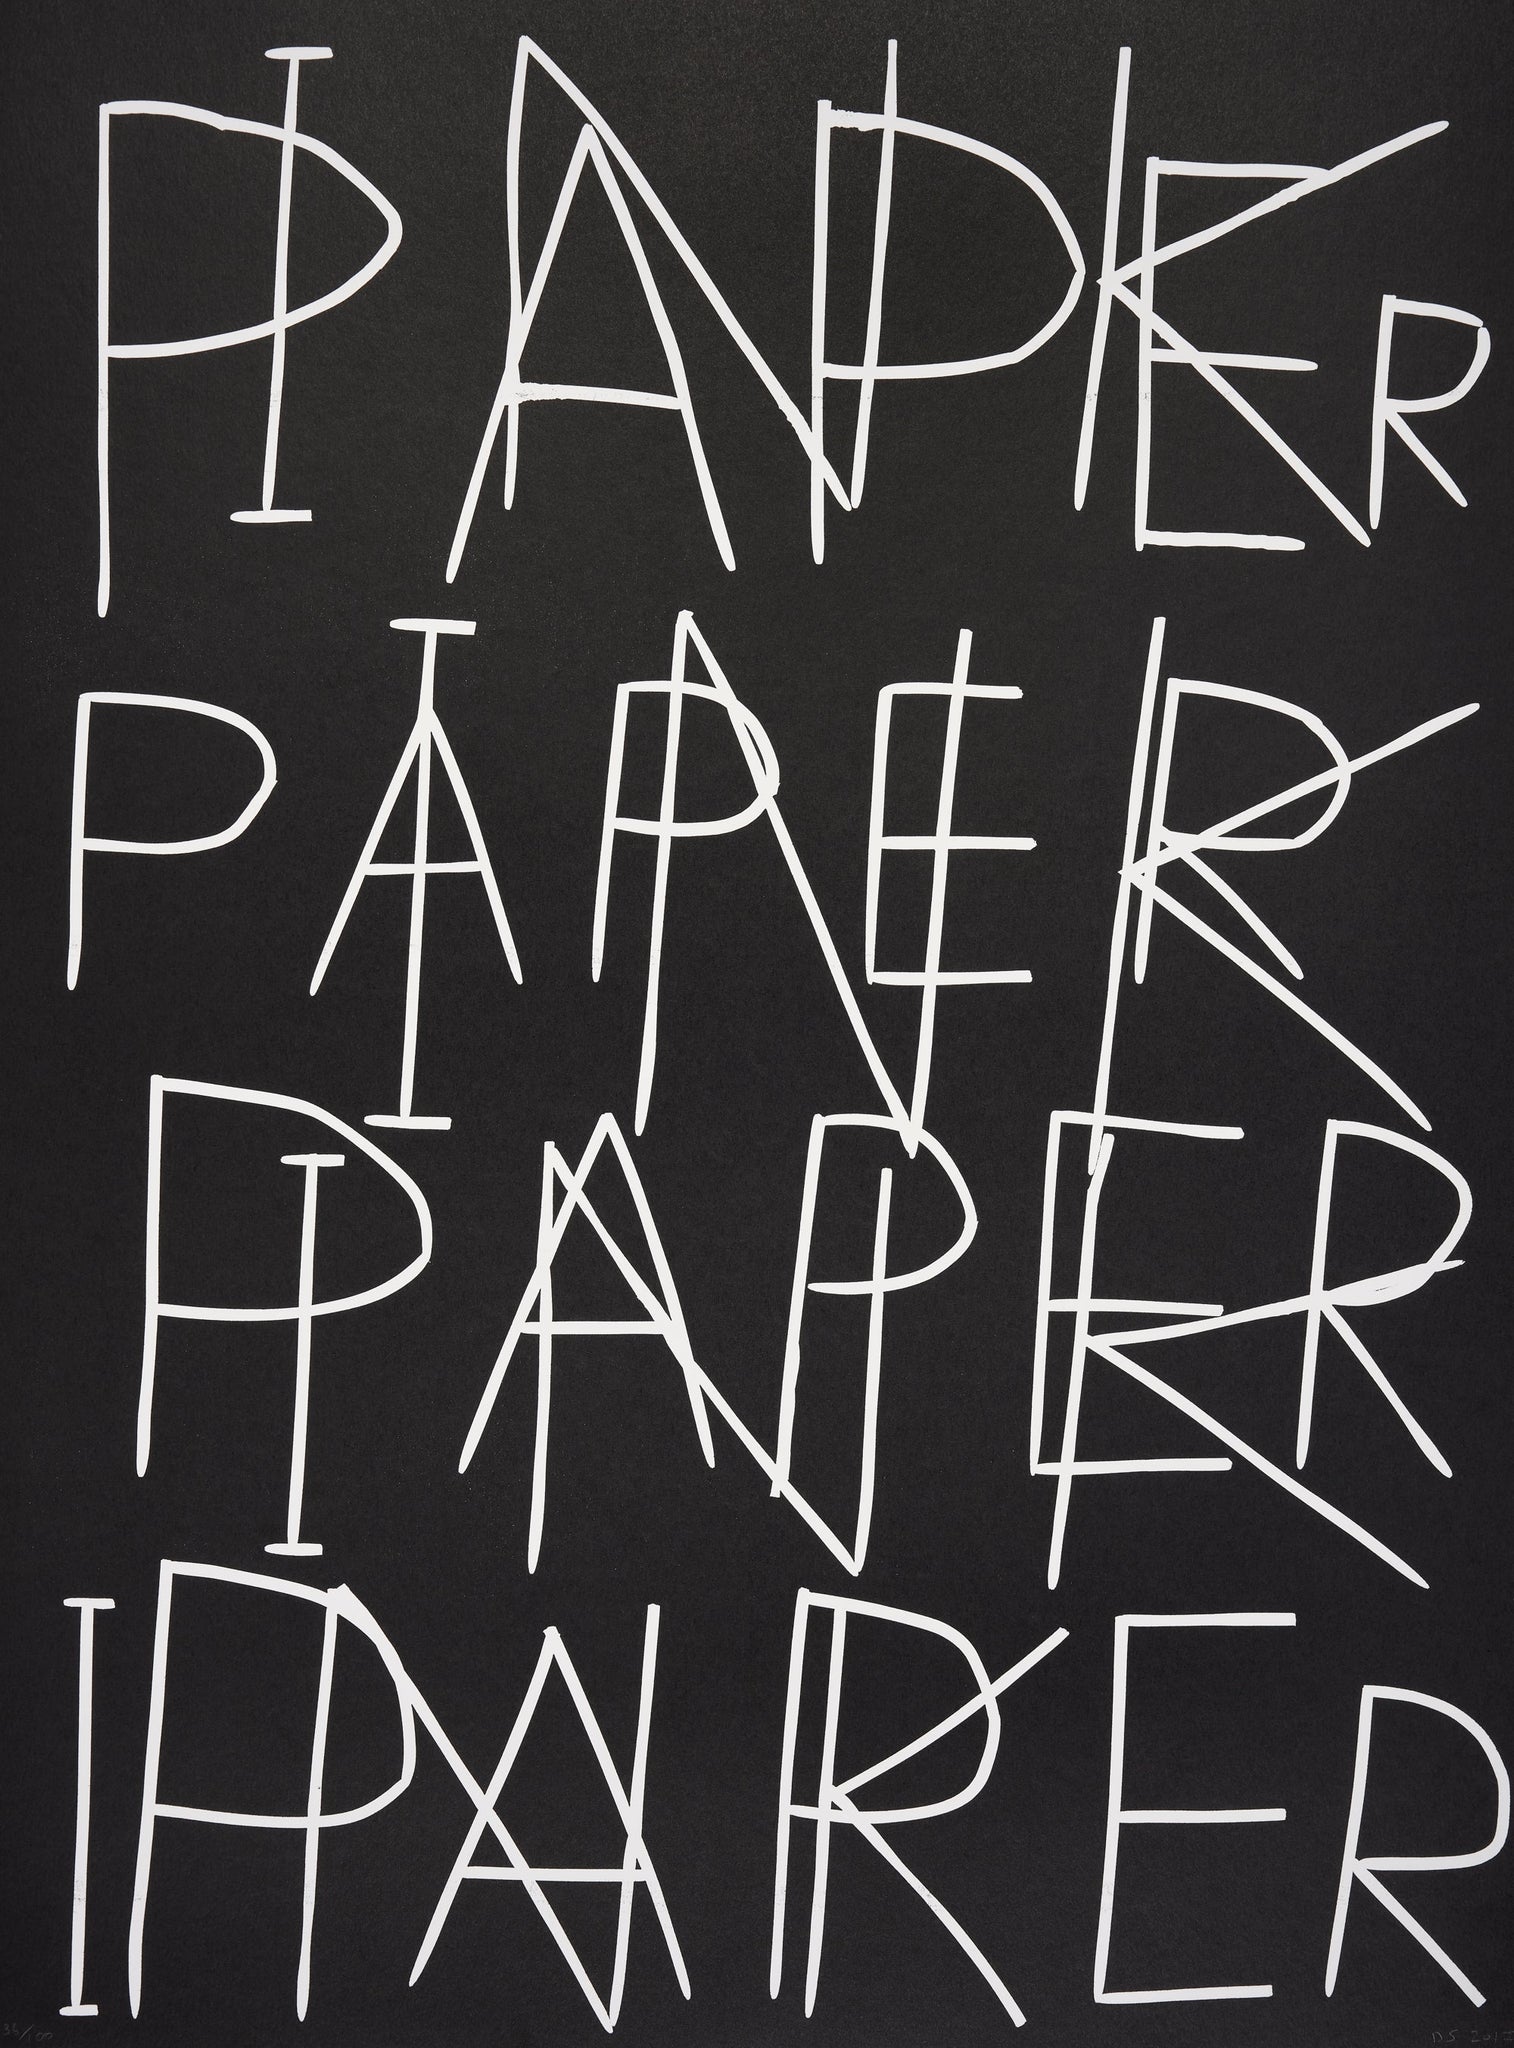 Paper Ink